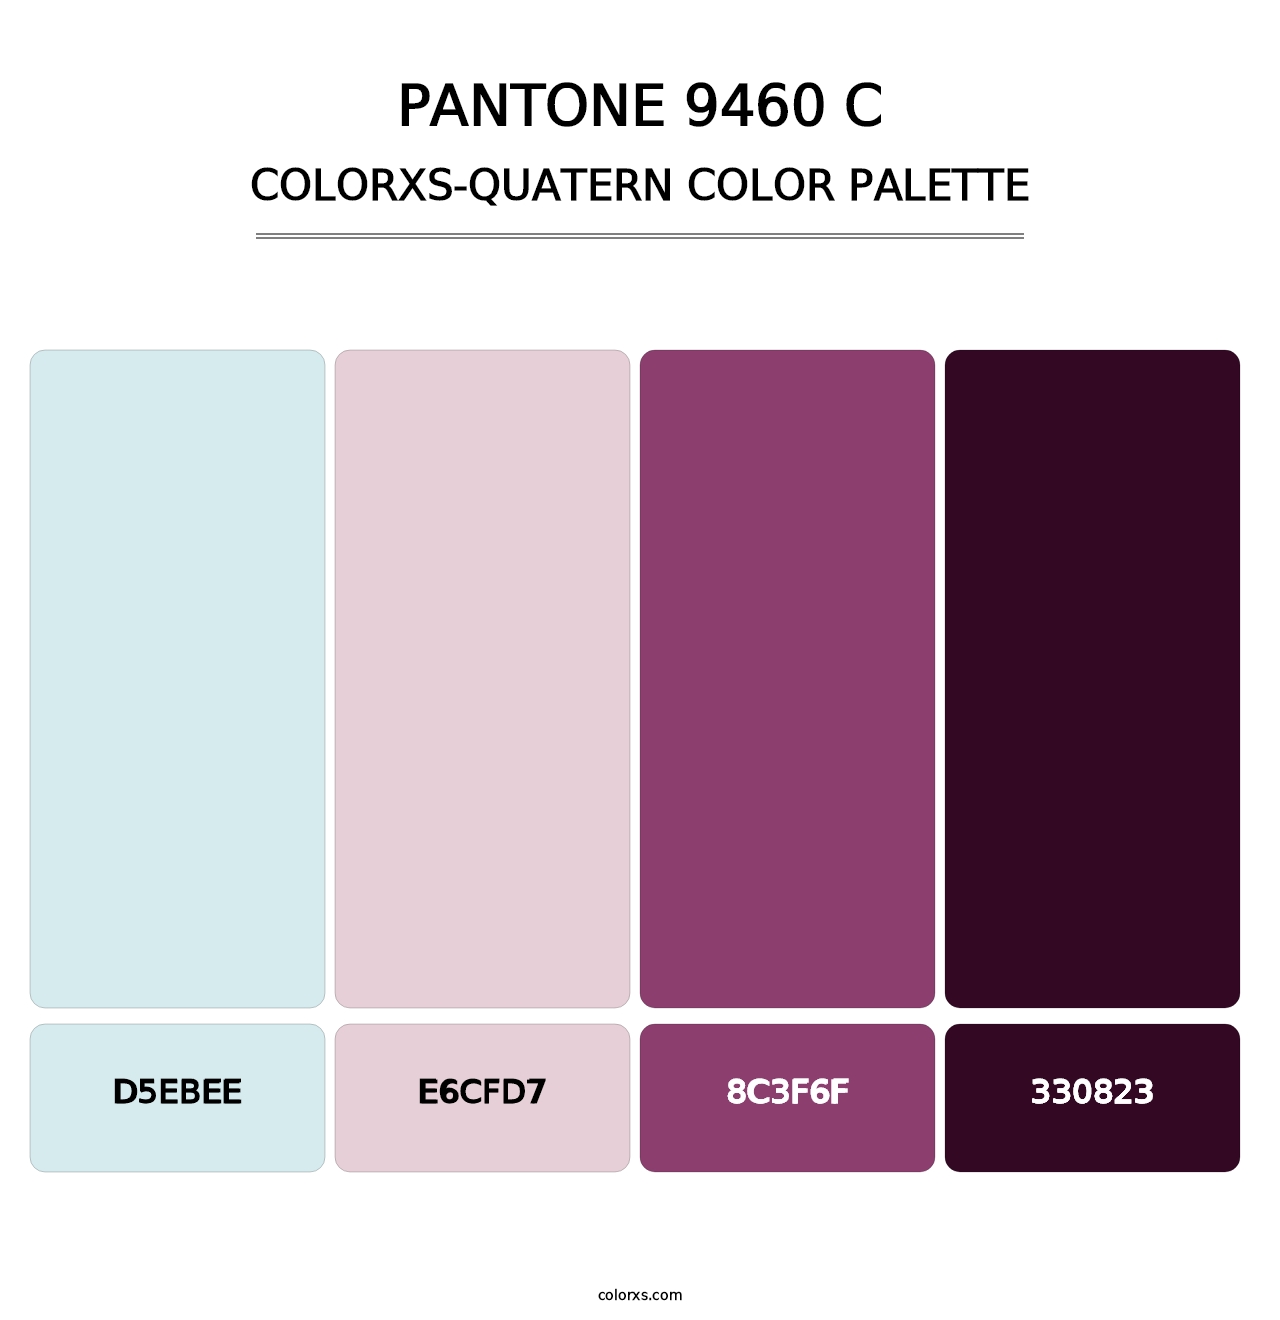 PANTONE 9460 C - Colorxs Quatern Palette